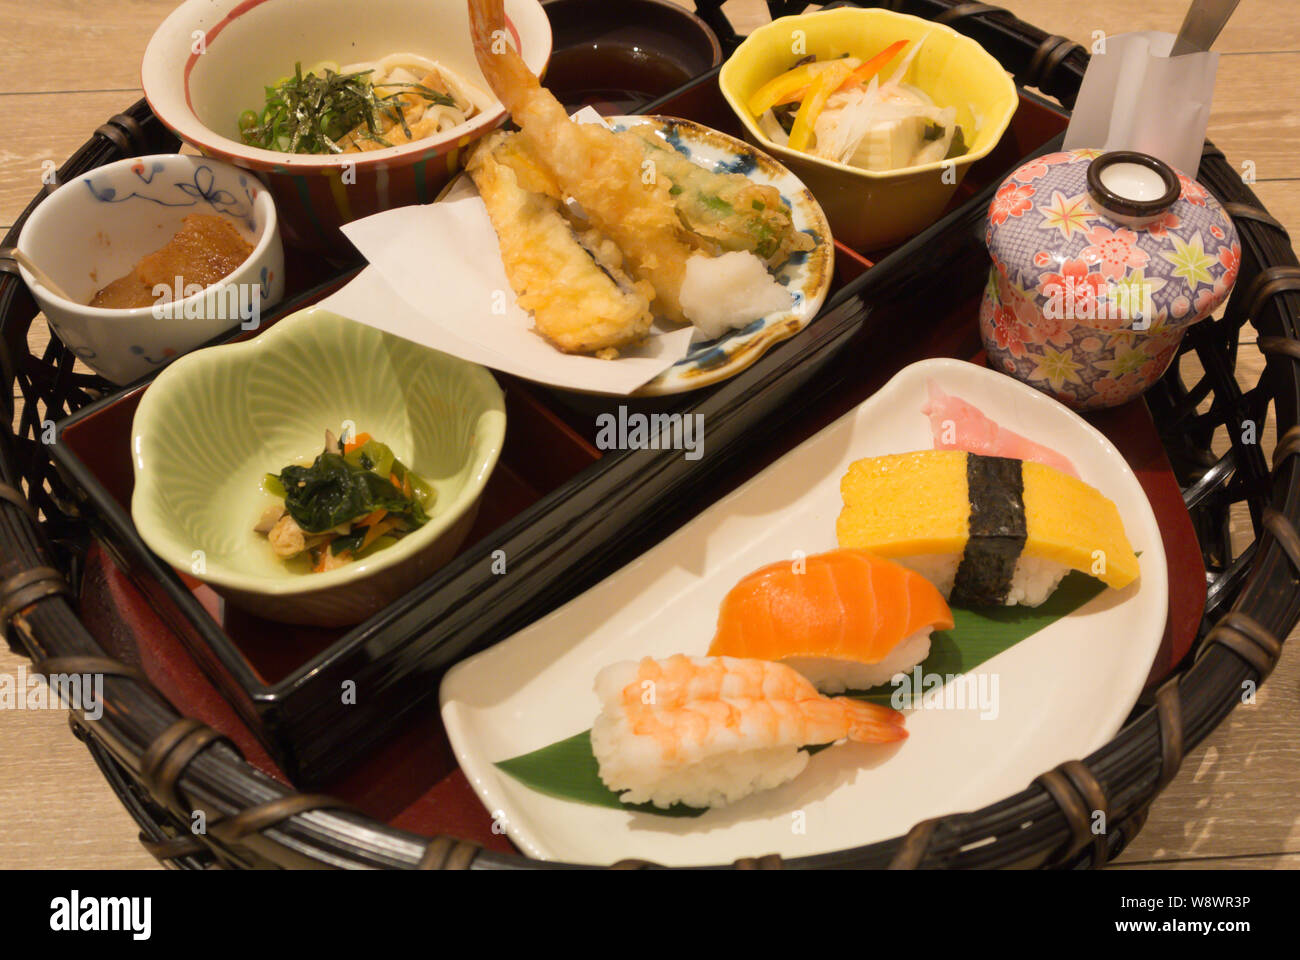 A Teishoku Set Menu At A Japanese Restaurant Tokyo Japan Stock Photo Alamy